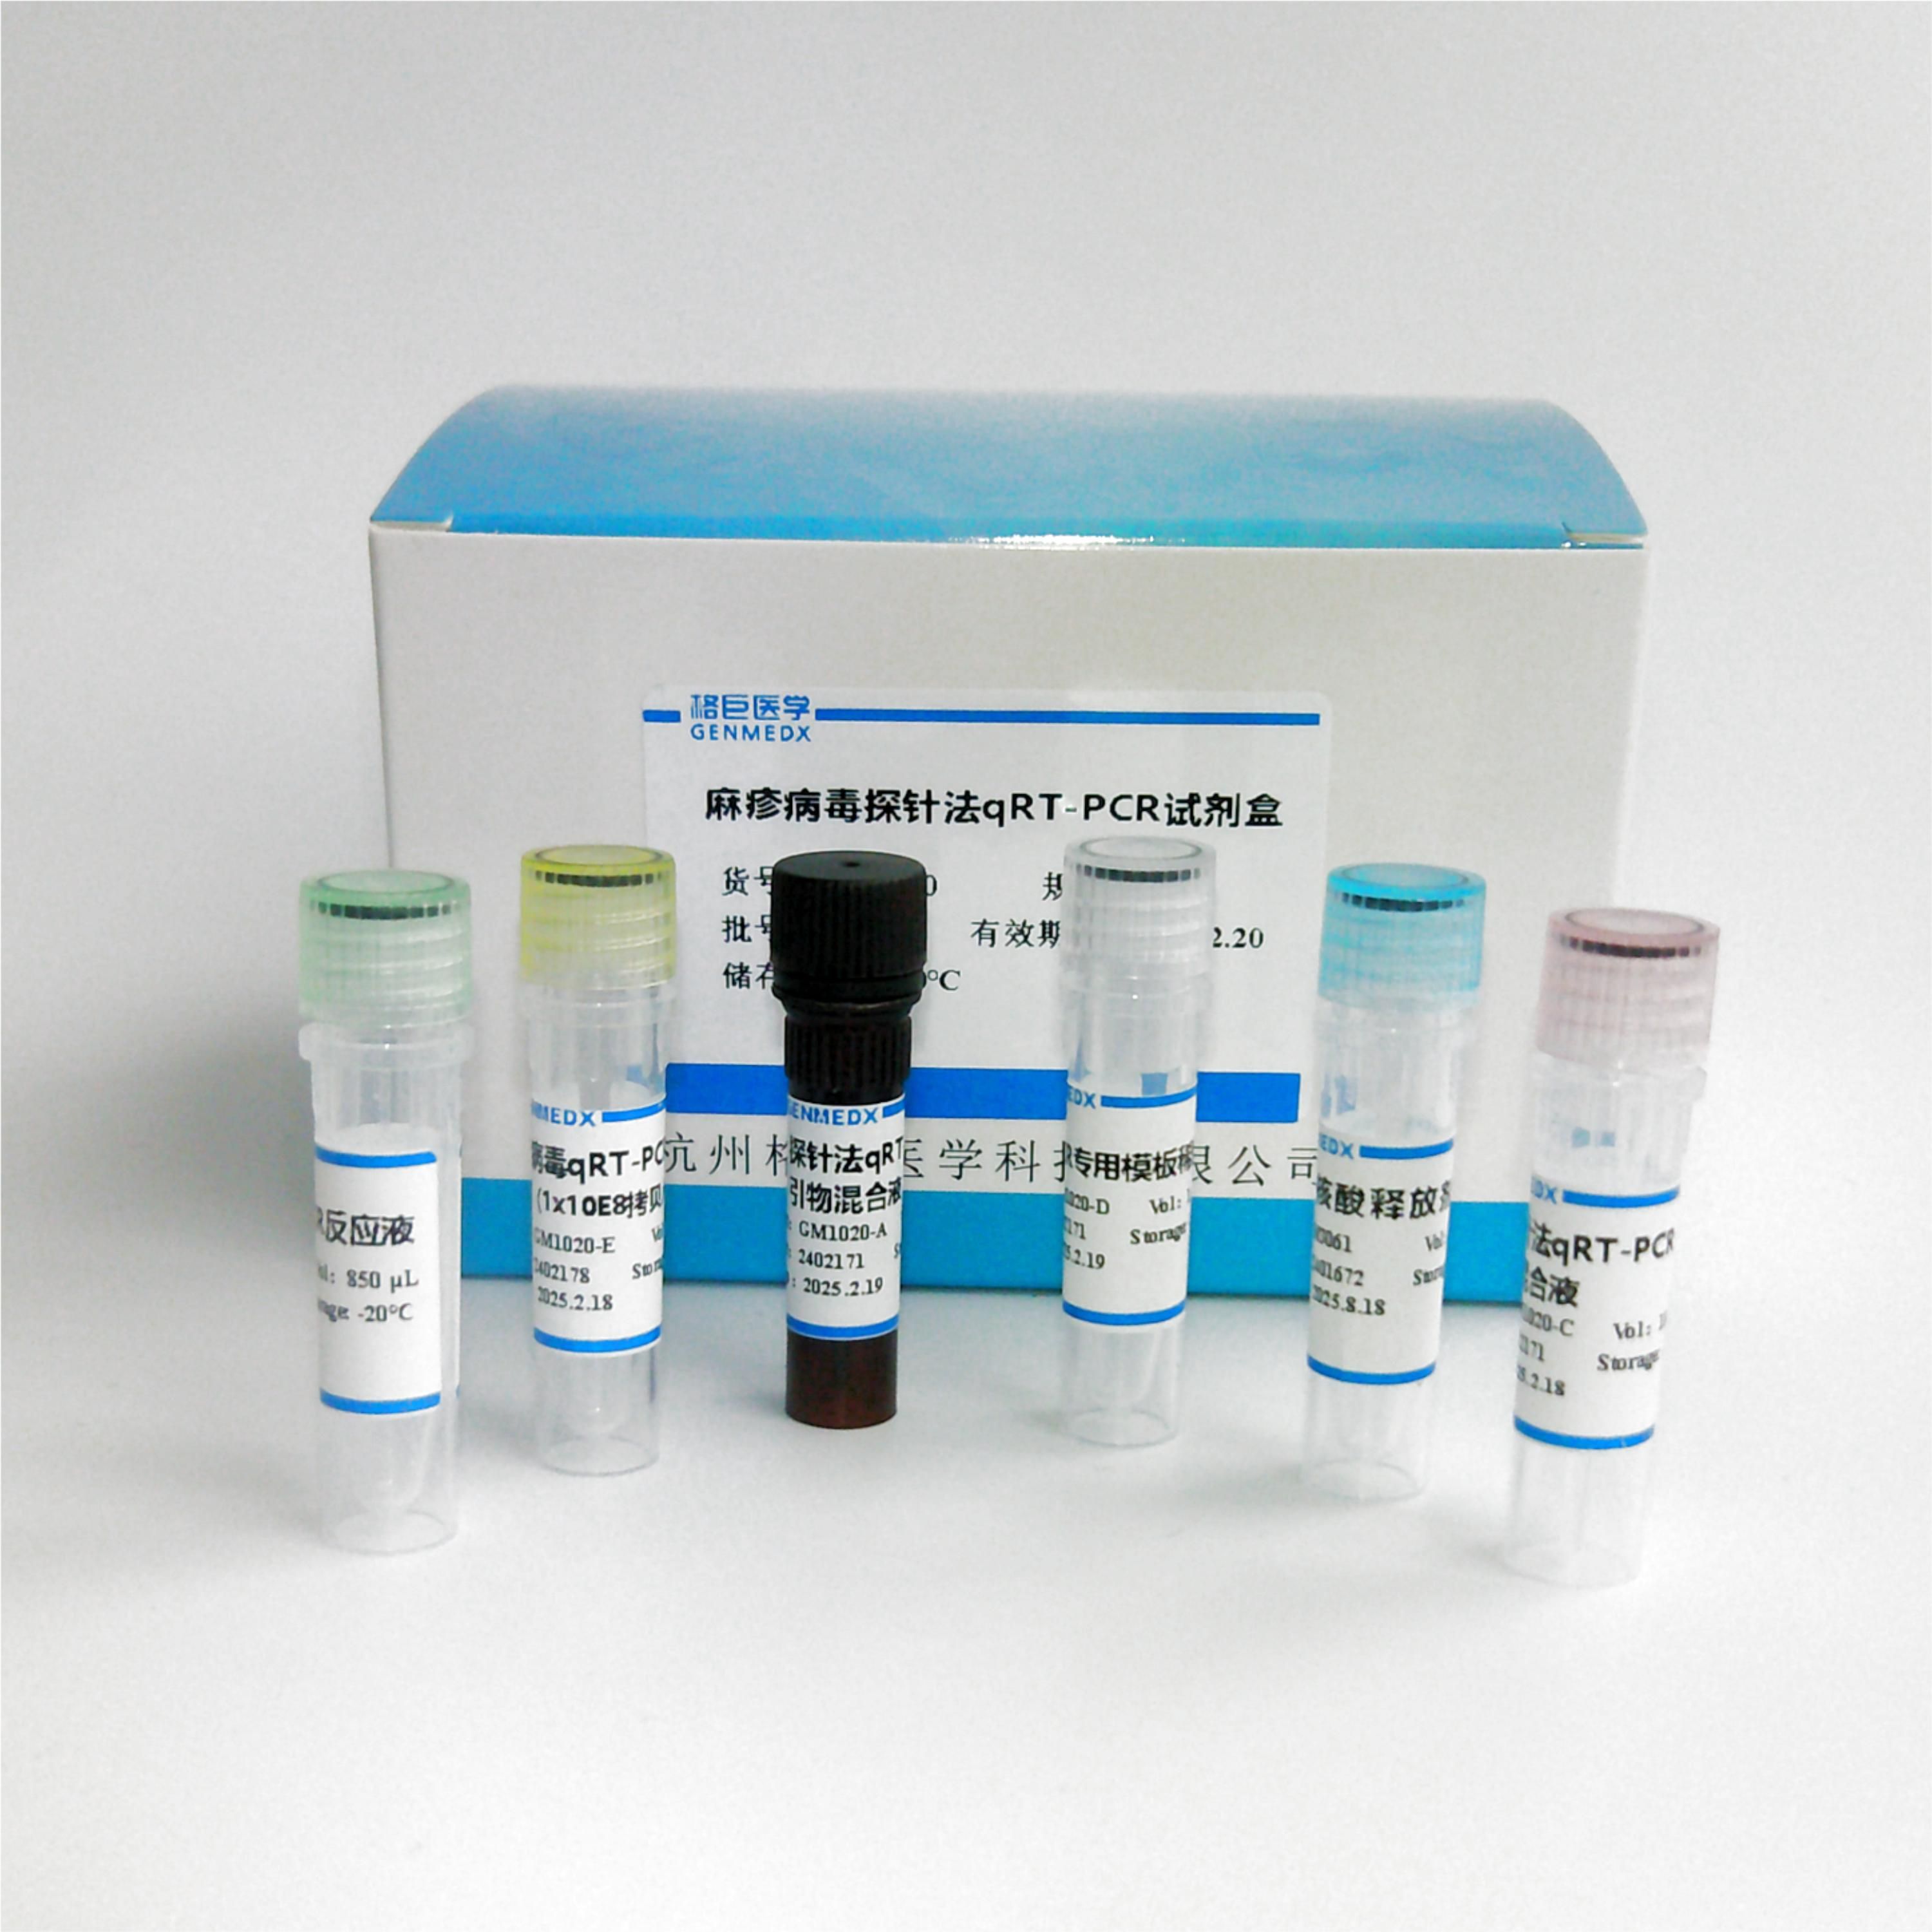 非洲猪瘟病毒探针法荧光定量RT-PCR试剂盒